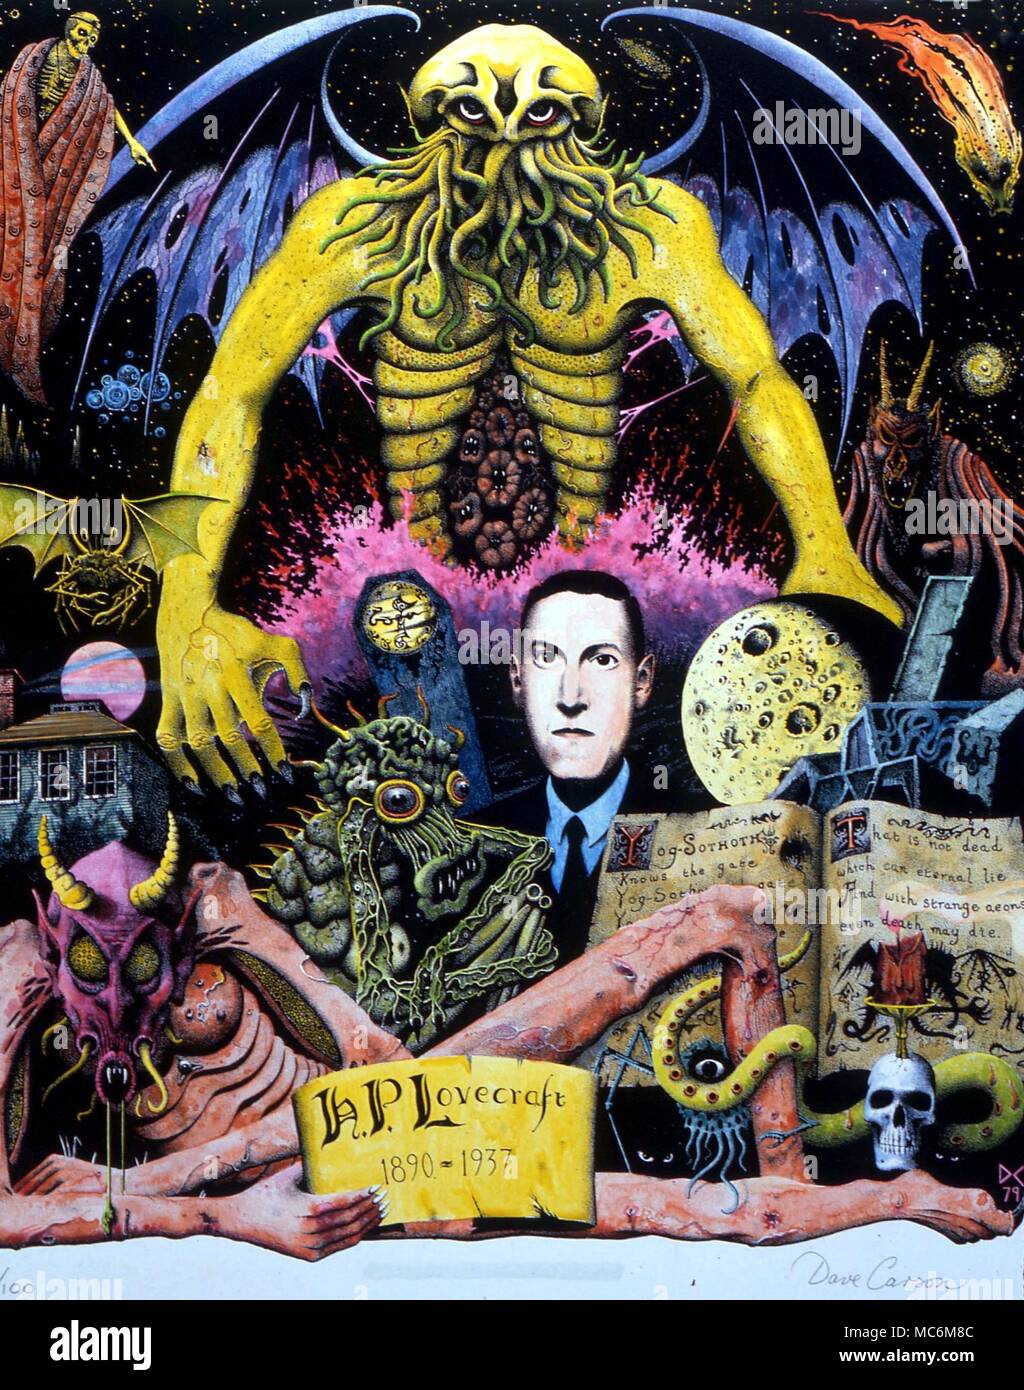 Monster - LOVECRAFT'S MONSTER. Portrait der Okkultist, Dichter und Schriftsteller der übernatürlichen Geschichten, Howard Phillips Lovercraft (1890-1937). Hier ist er unter Monster seiner eigenen Schöpfung dargestellt. Bild von David Carson. Rechte der Vervielfältigung mit CW Stockfoto